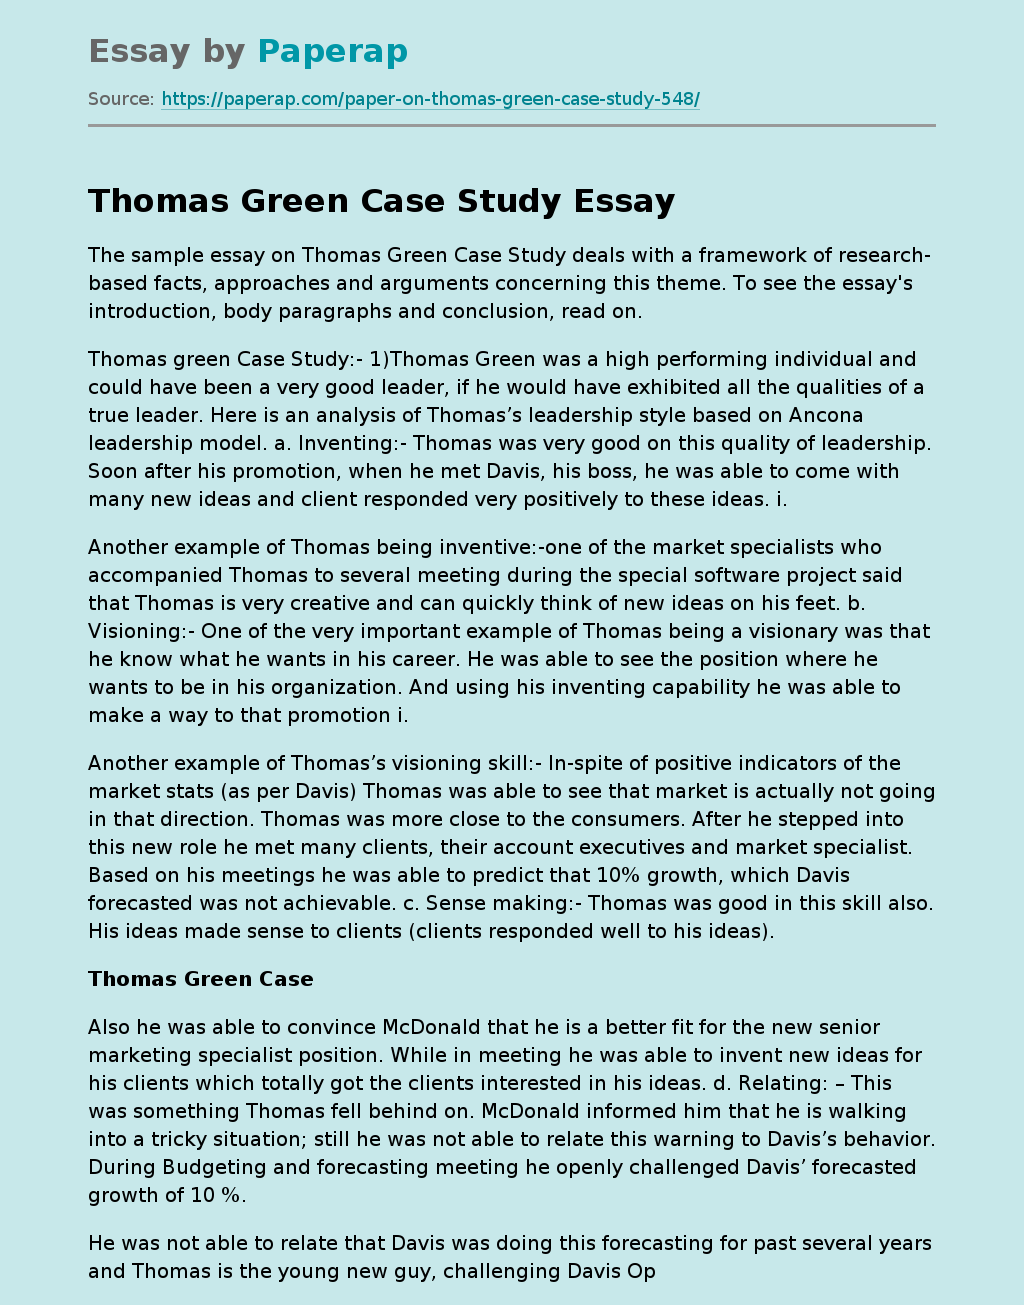 Thomas Green Case Study